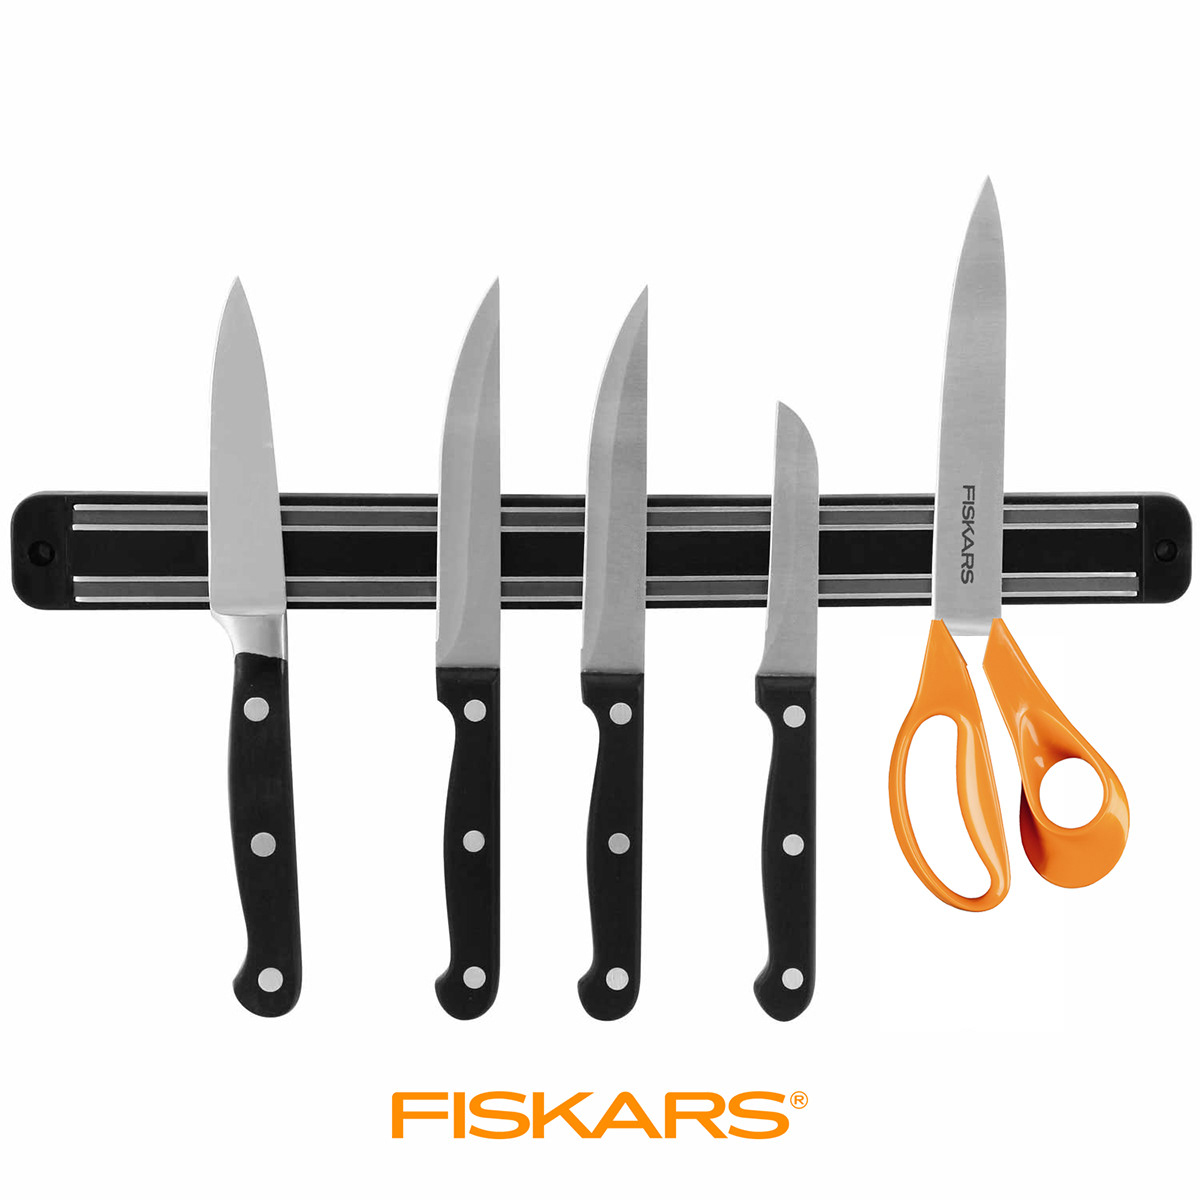 #Fiskars #the #worlds #sharpest #Scissor